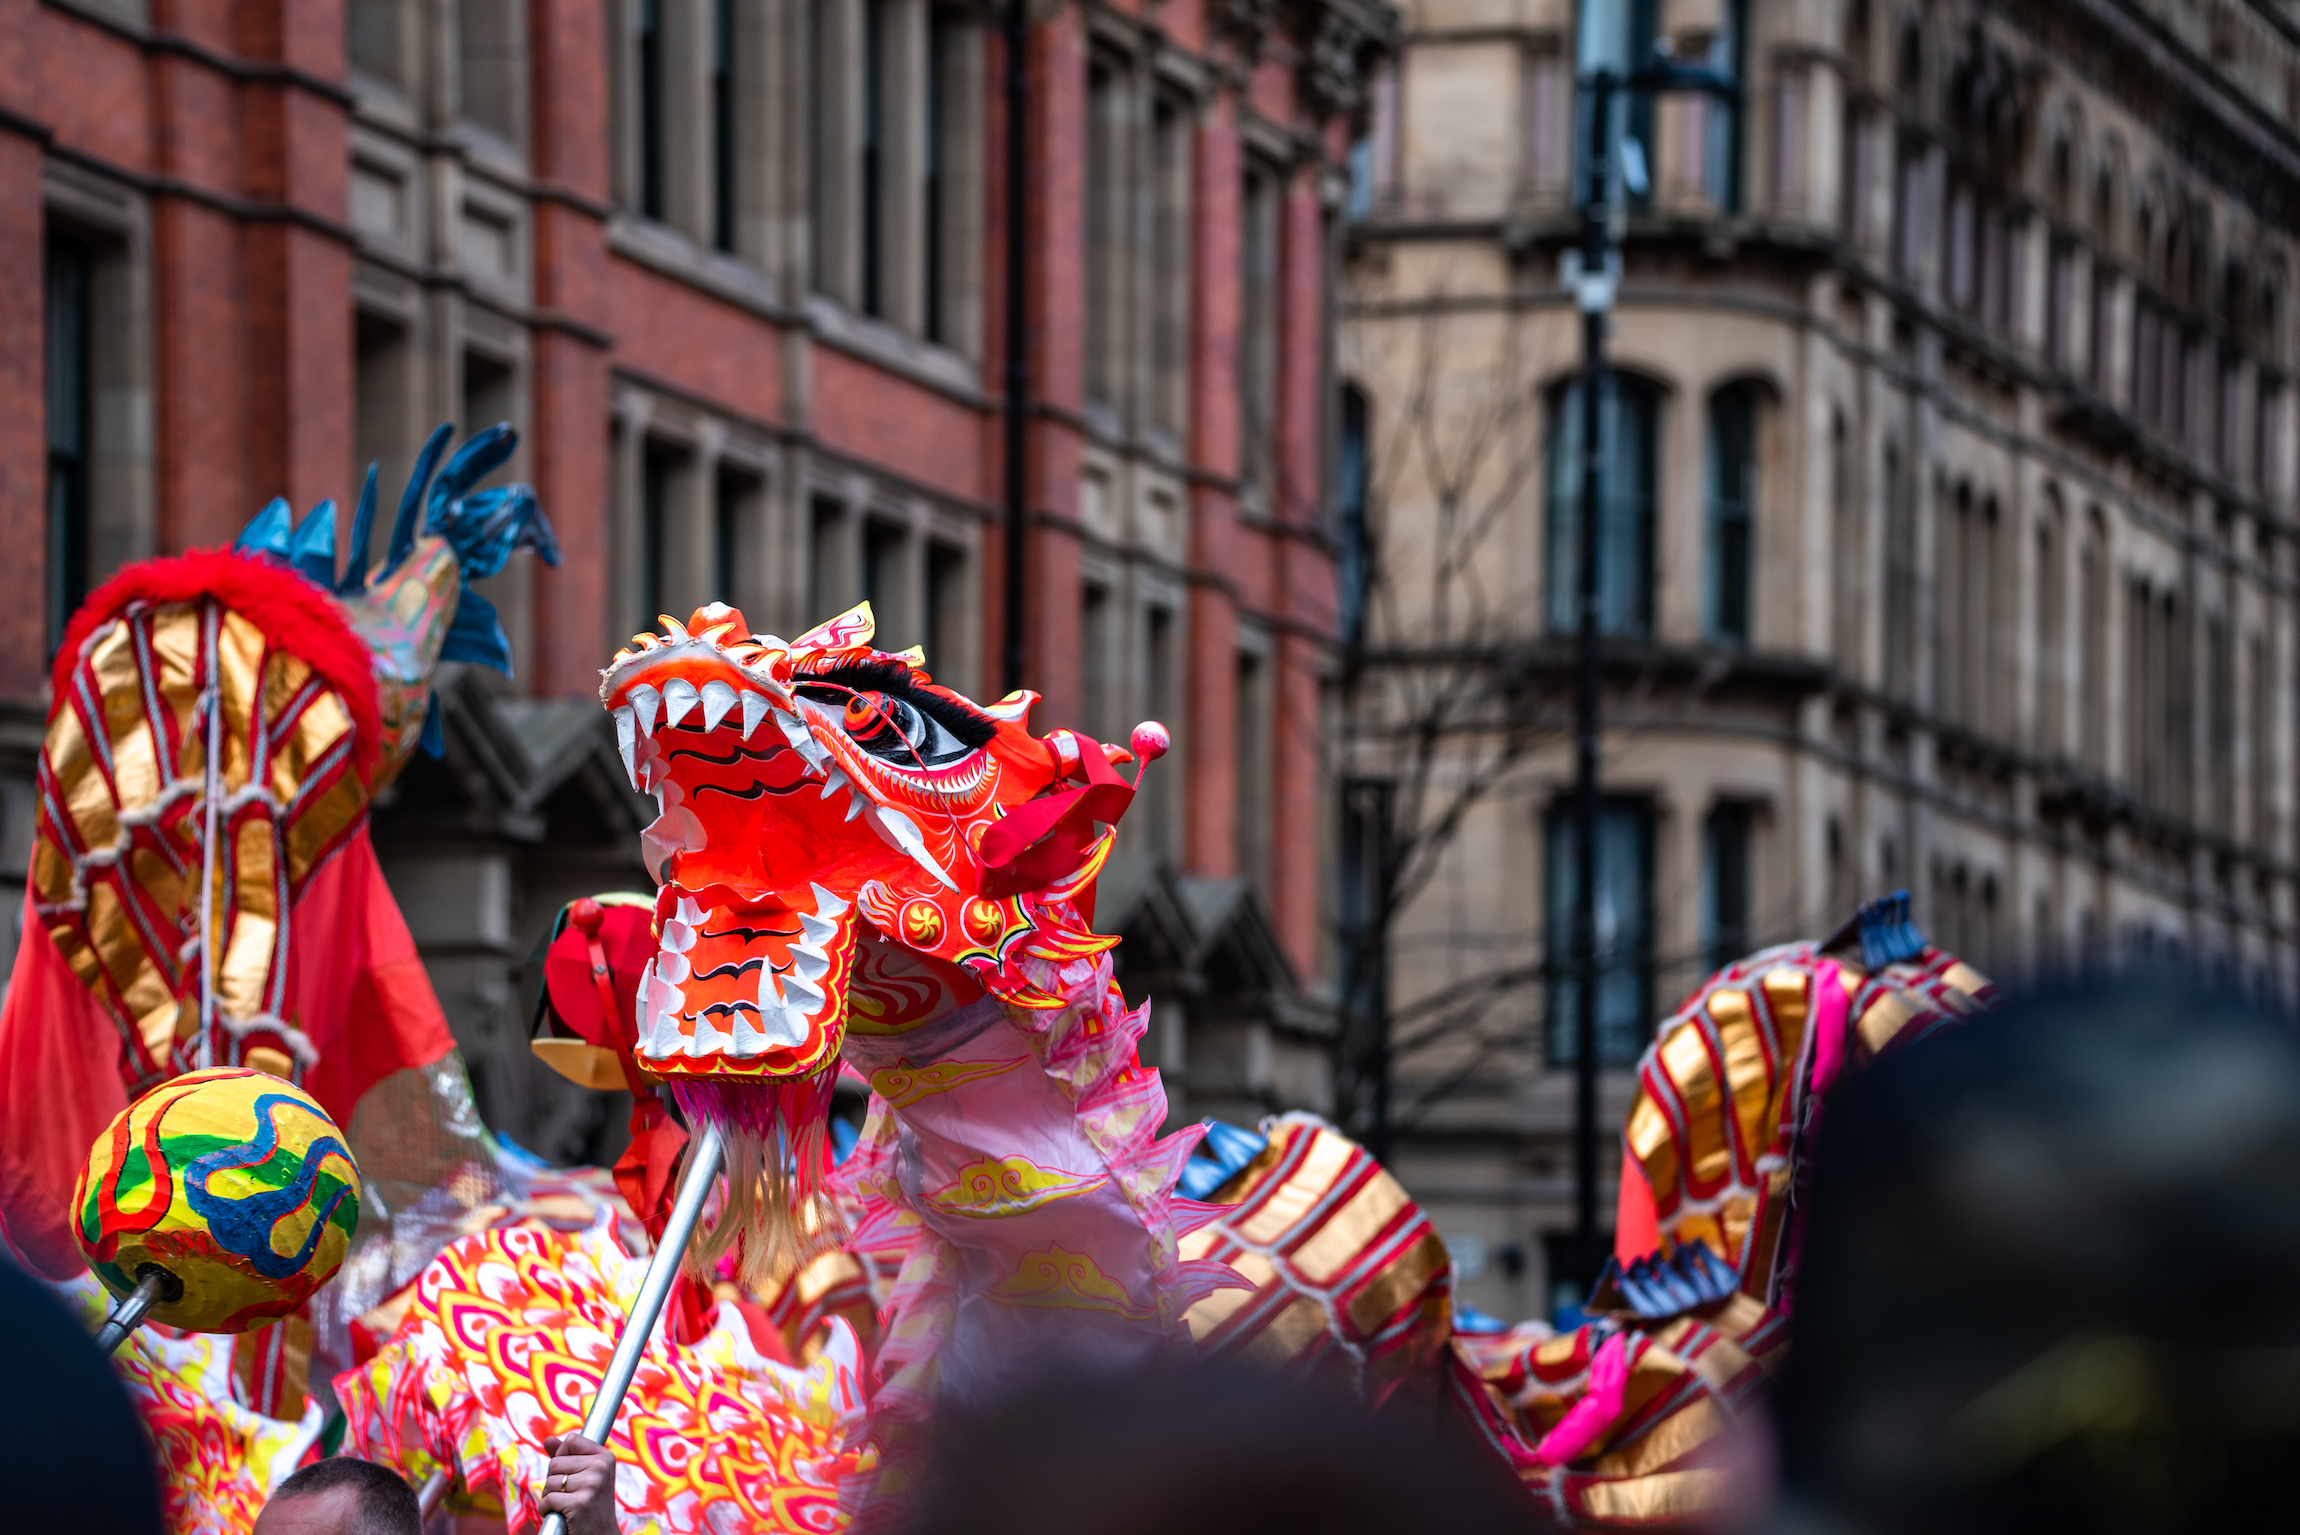 Tańczący smok w chińskim nowym roku festiwal zabawa marionetka ludzie parada festiwal świętowanie uk manchester czerwony